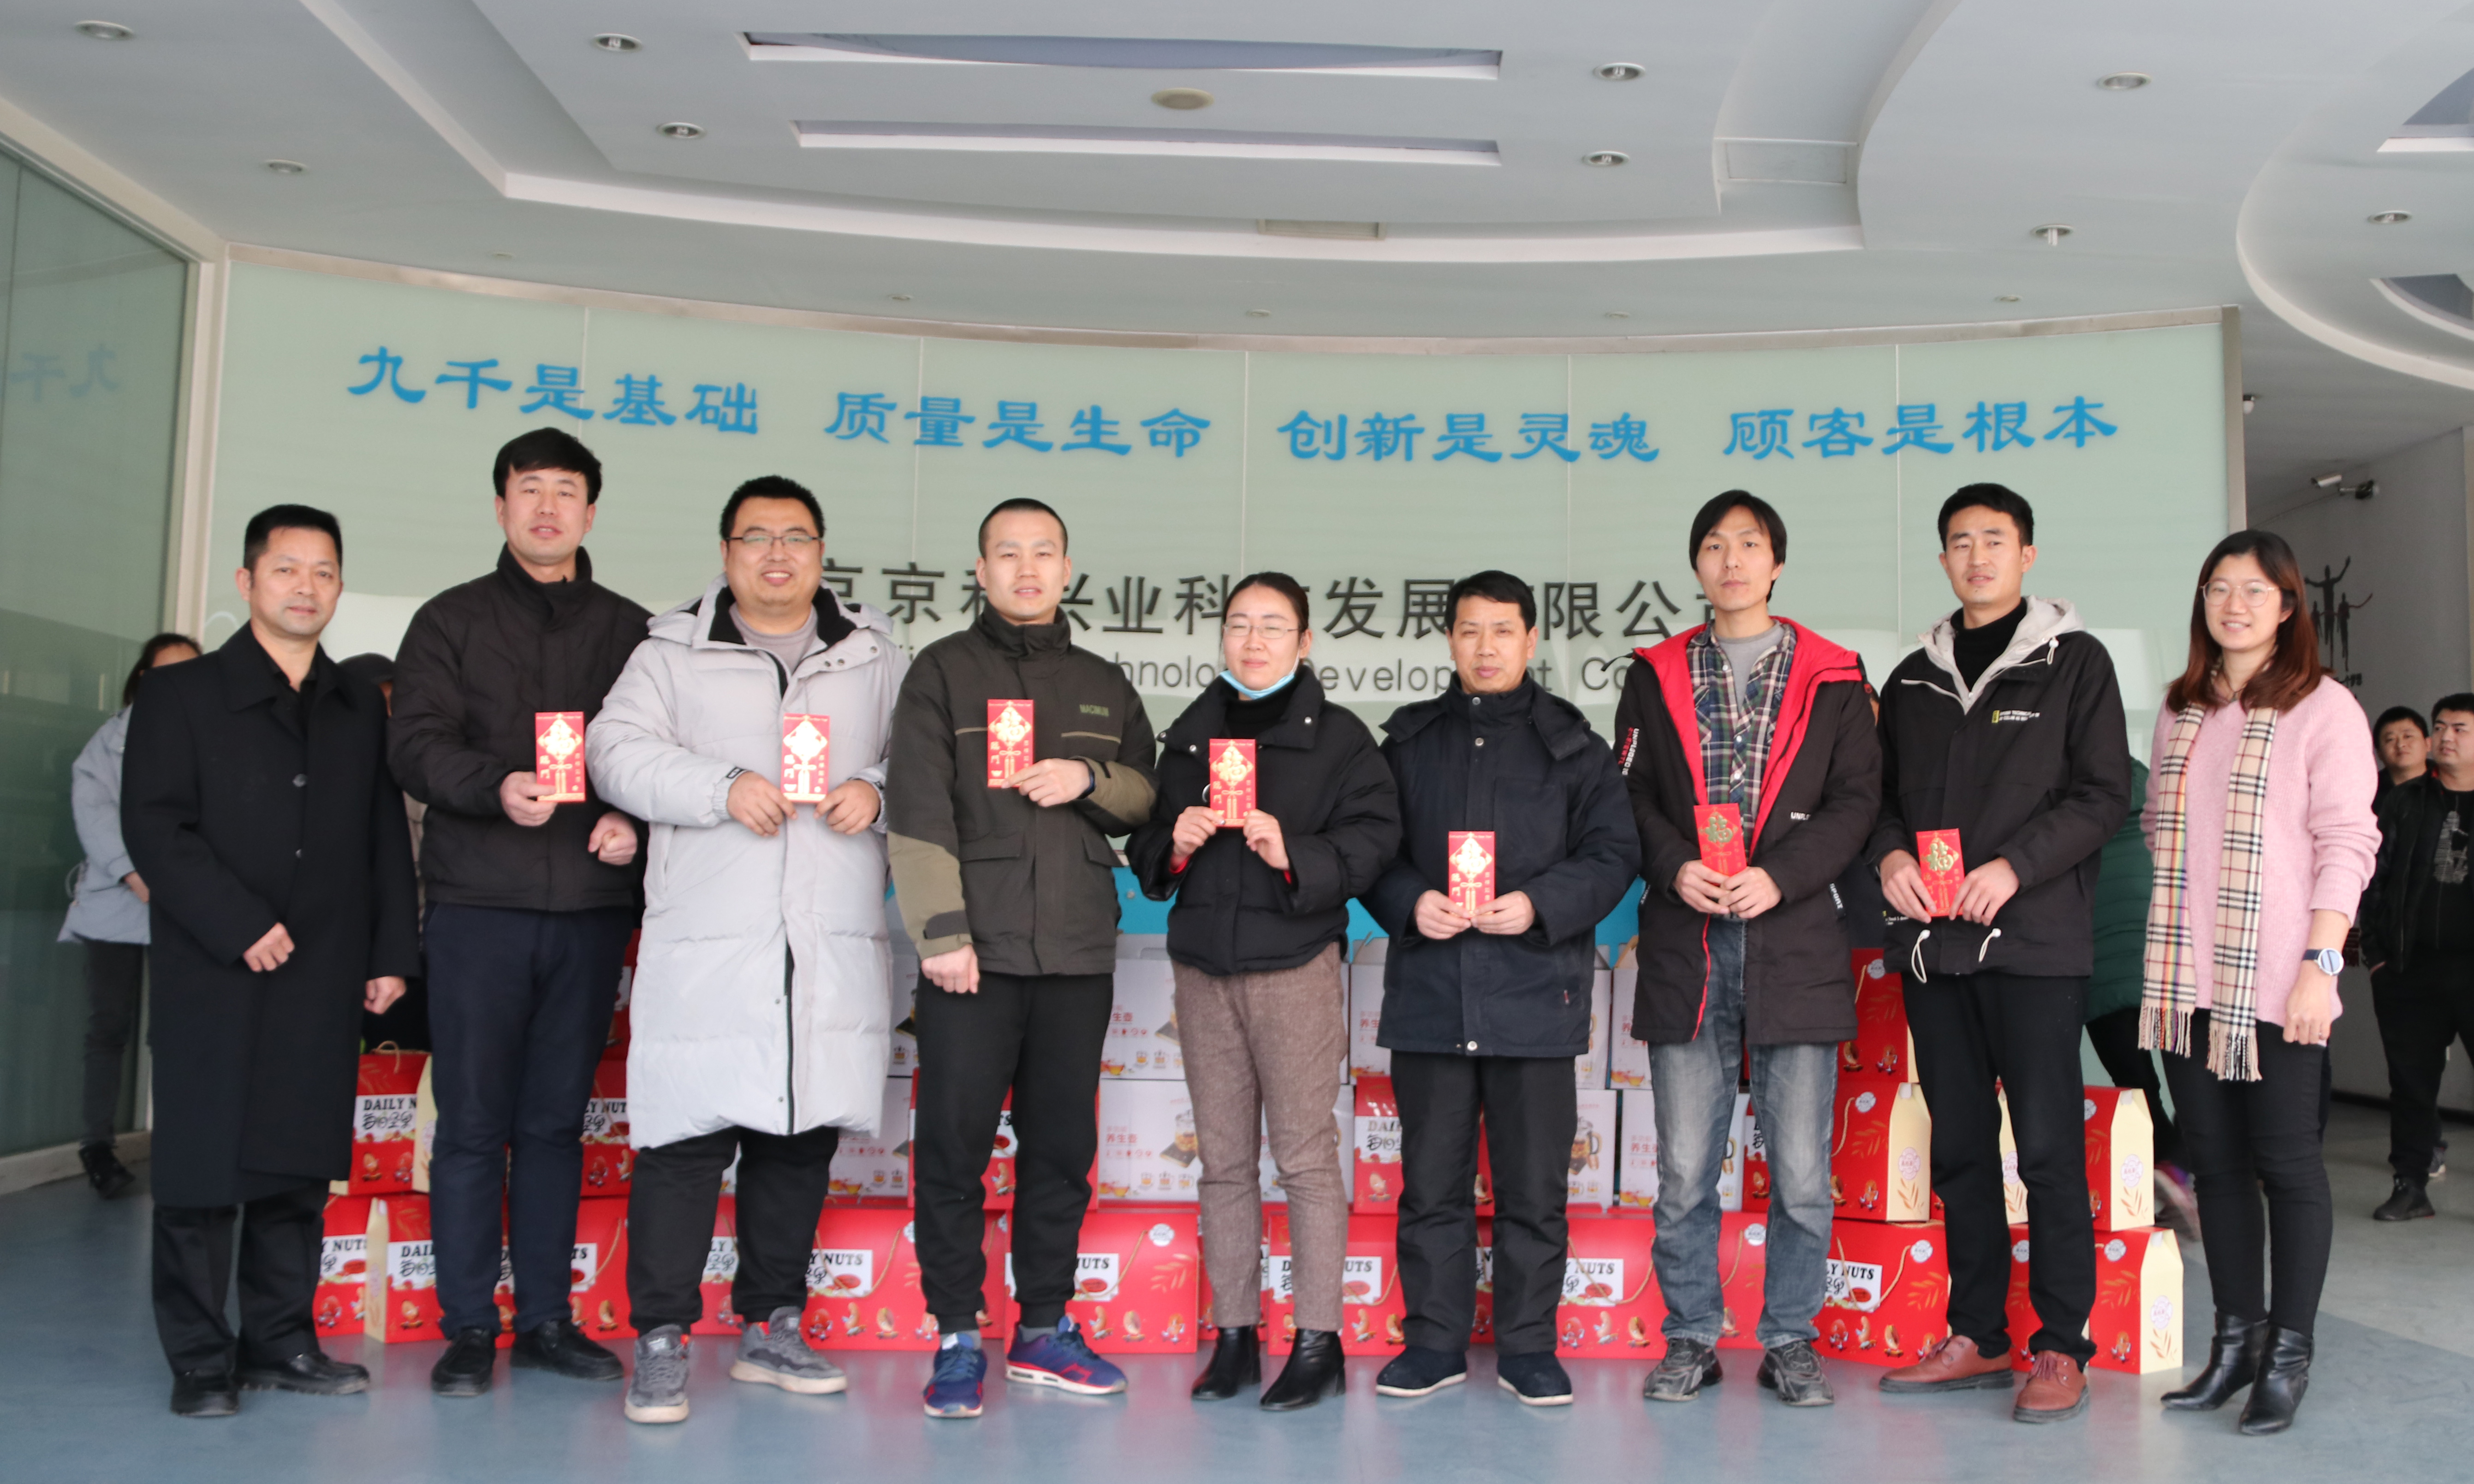 北京京科公司奖励专利创新并发放新年礼包